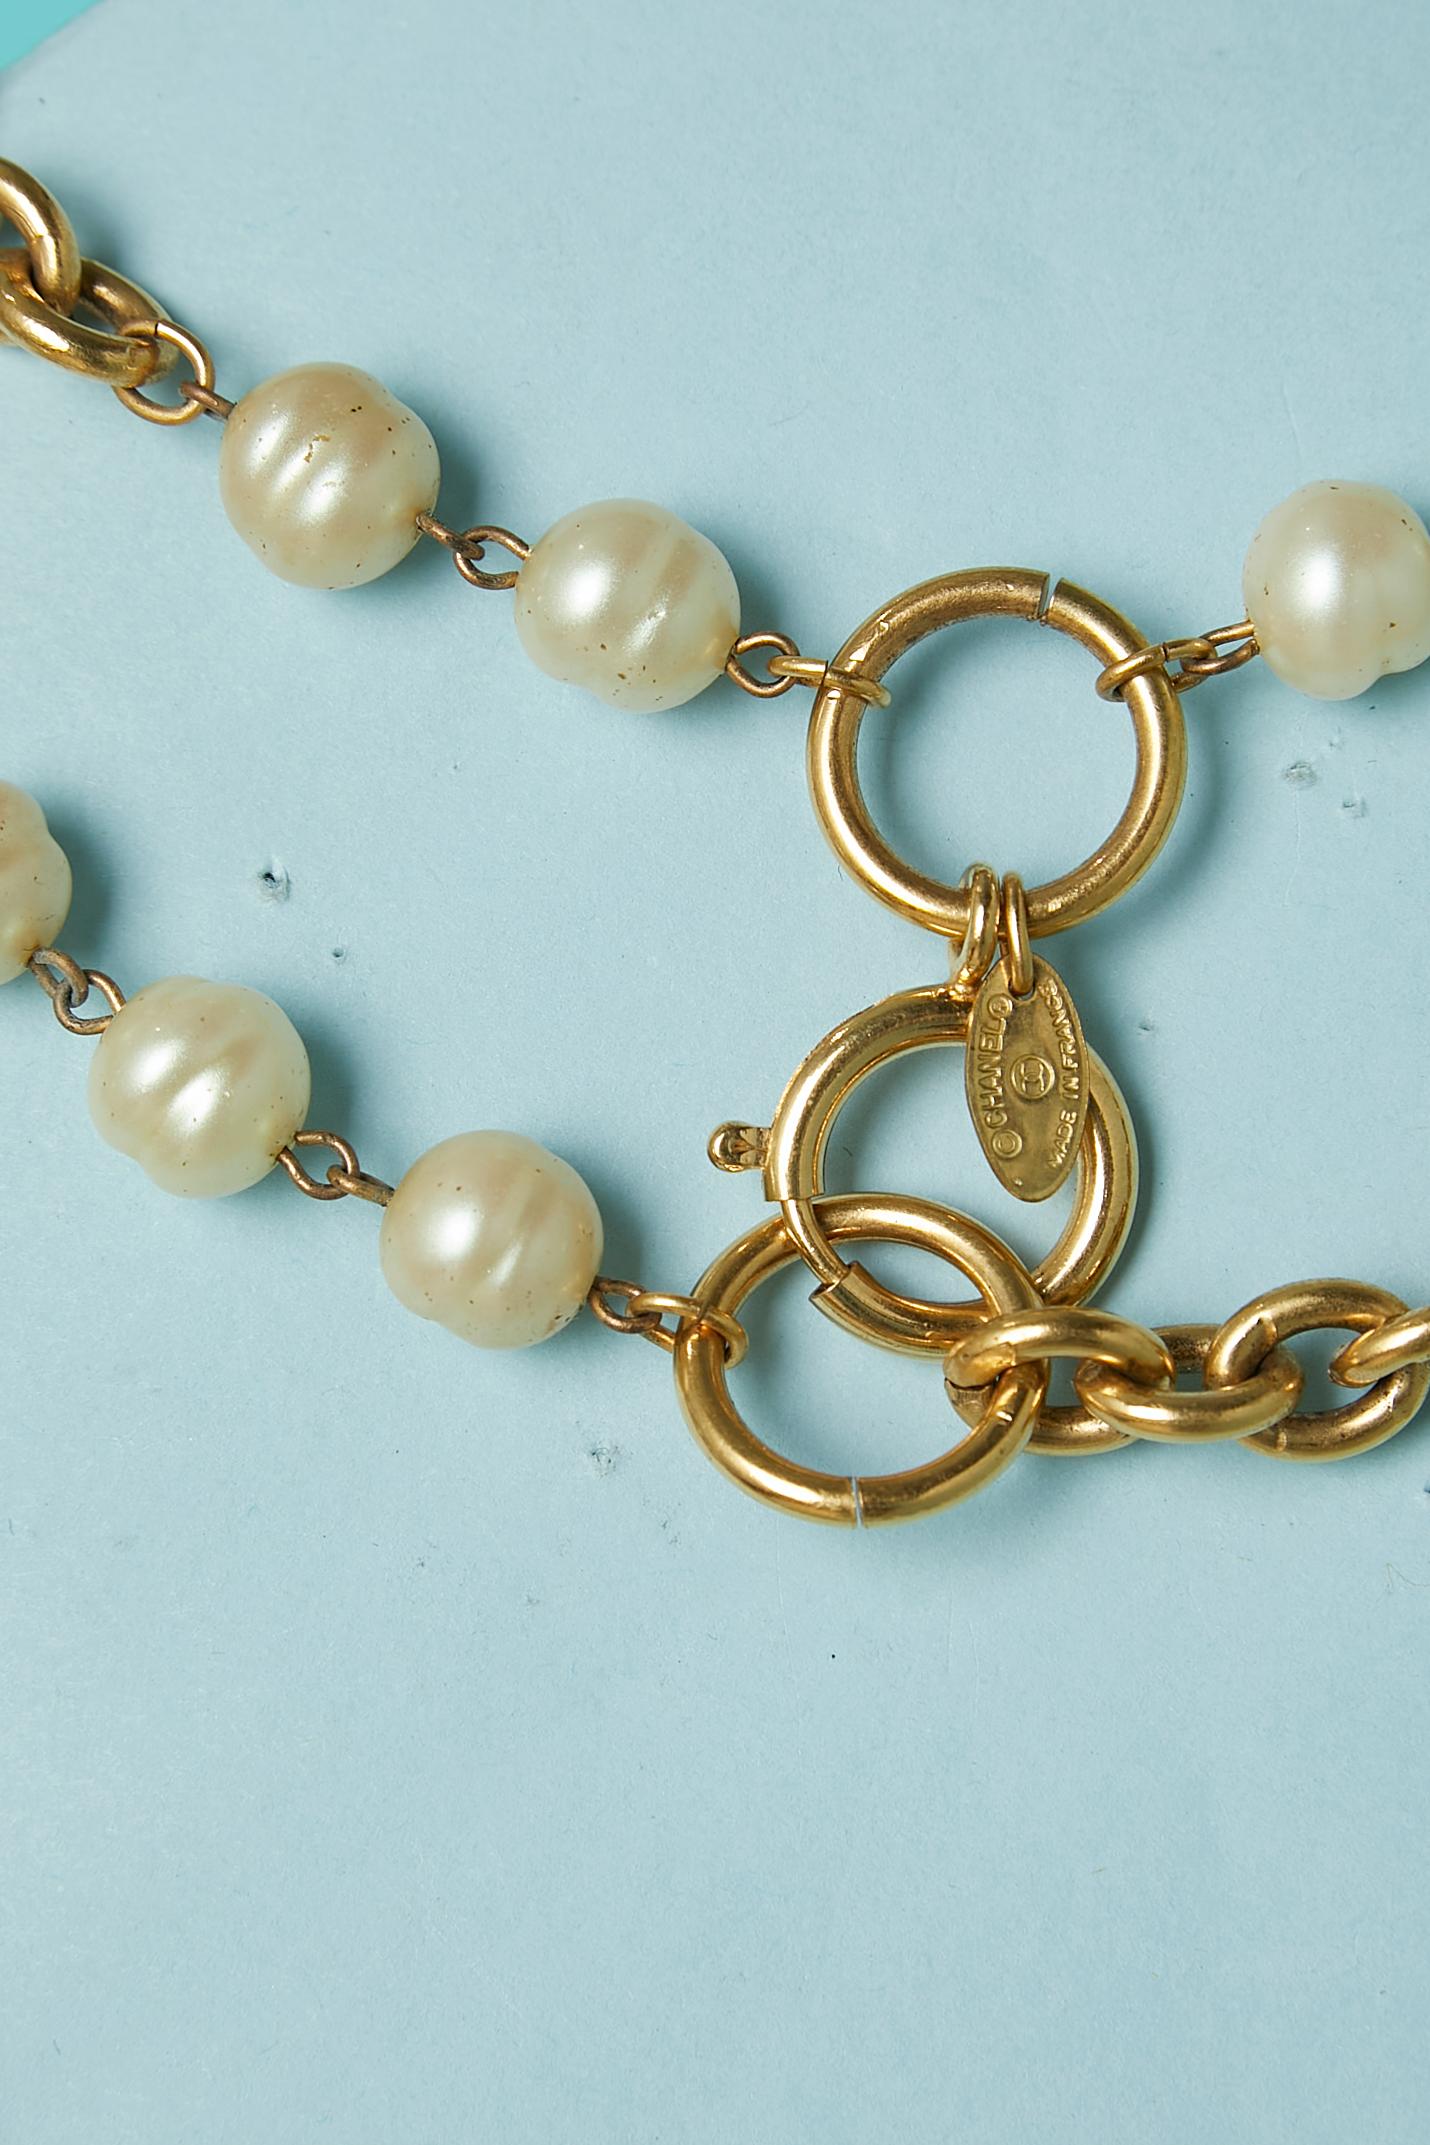 Circa 1980's Deux rangs de perles (synthétiques).  ) et collier en chaîne. 
Longueur= 95 cm 
Fermeture crochet et œil 
Peut également être porté comme ceinture.